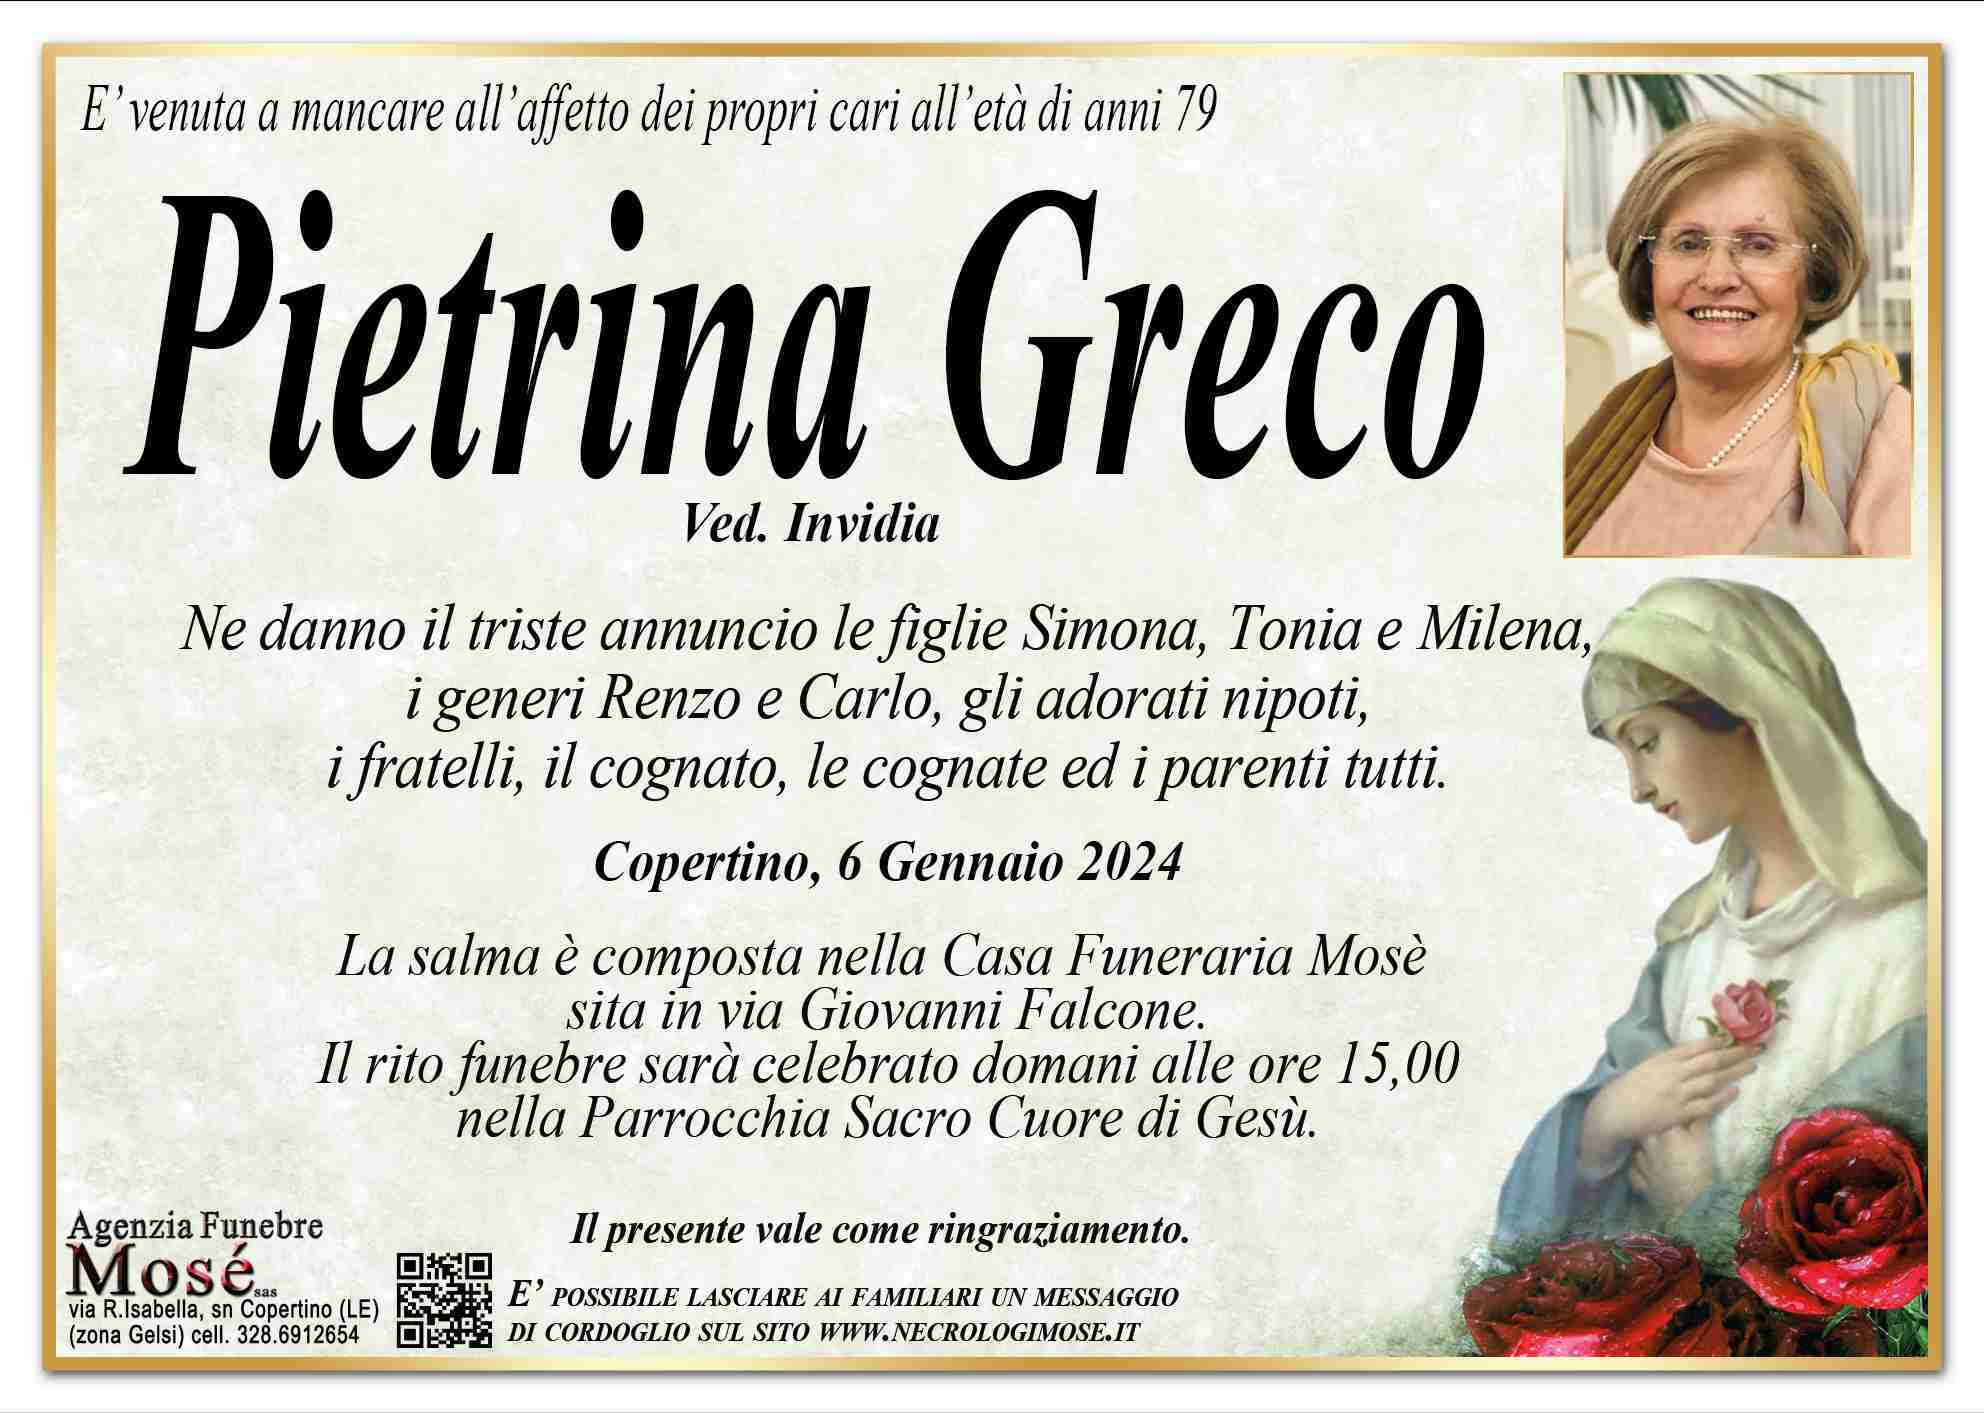 Pietrina Greco